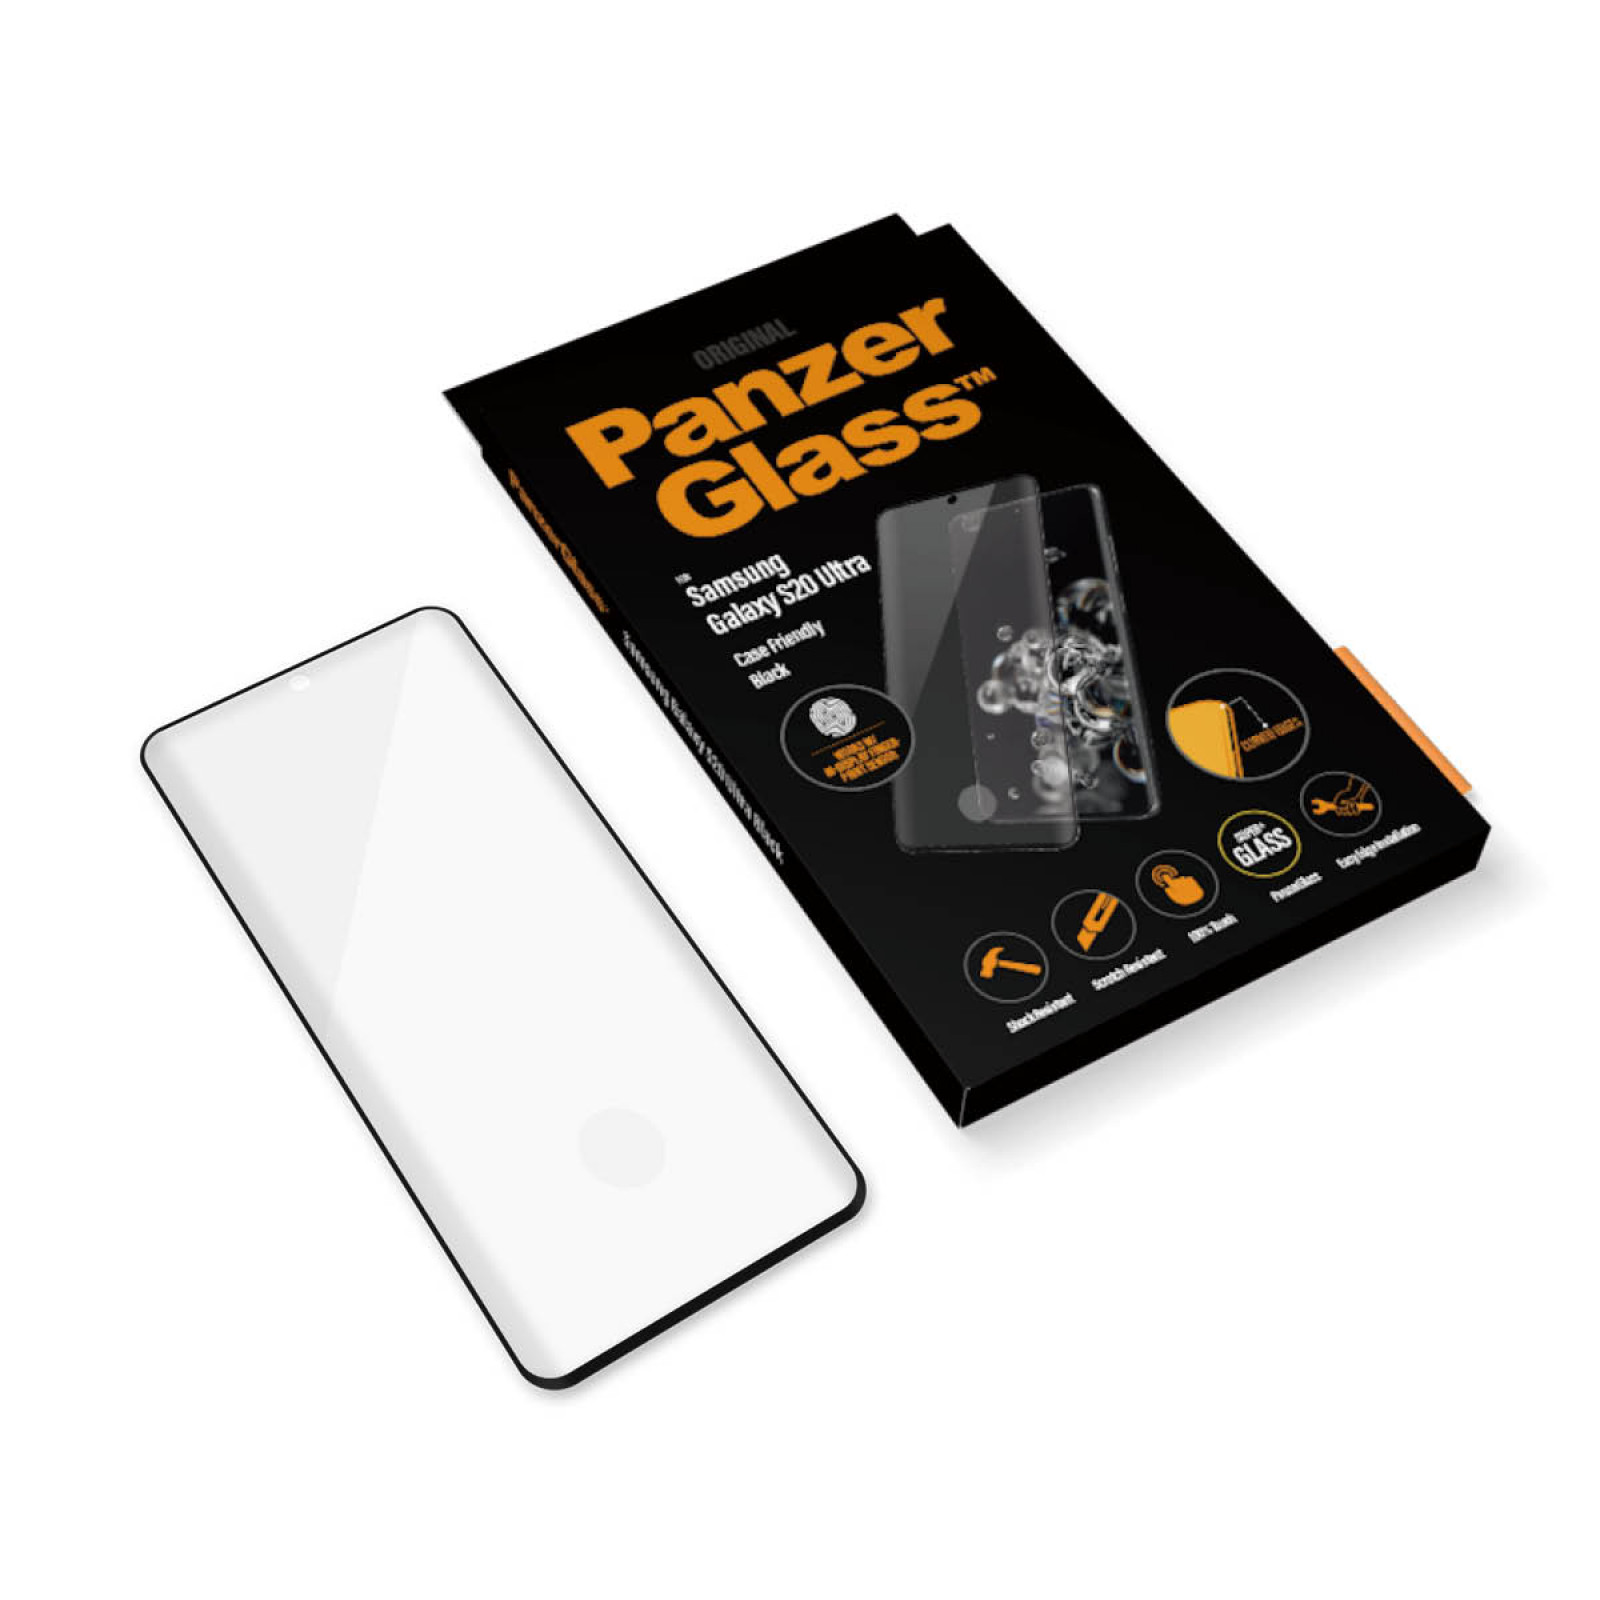 Стъклен протектор PanzerGlass за Samsung Galaxy S20 Ultra Case Friendly FingerPrint Черен